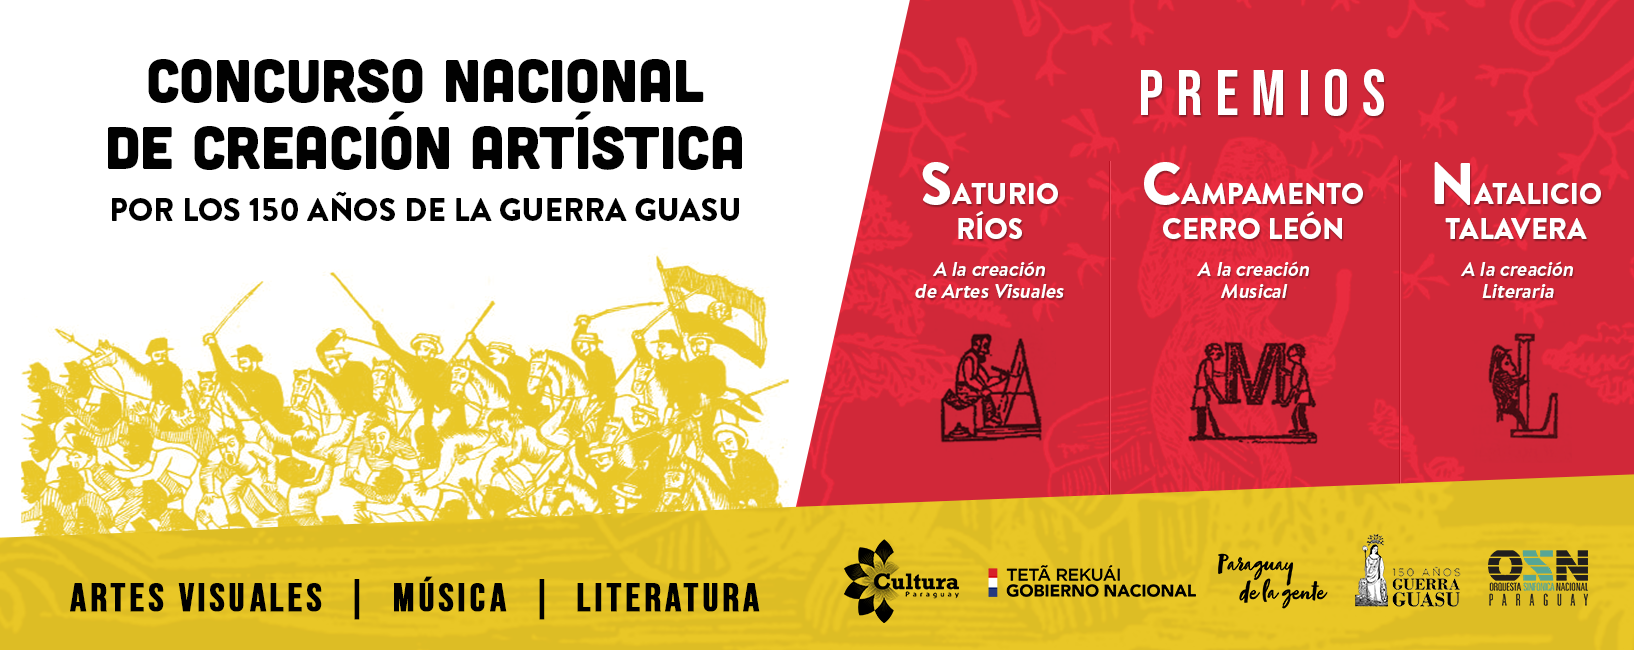 Concurso Nacional de Creación Artística por los 150 años de la Guerra Guasu imagen